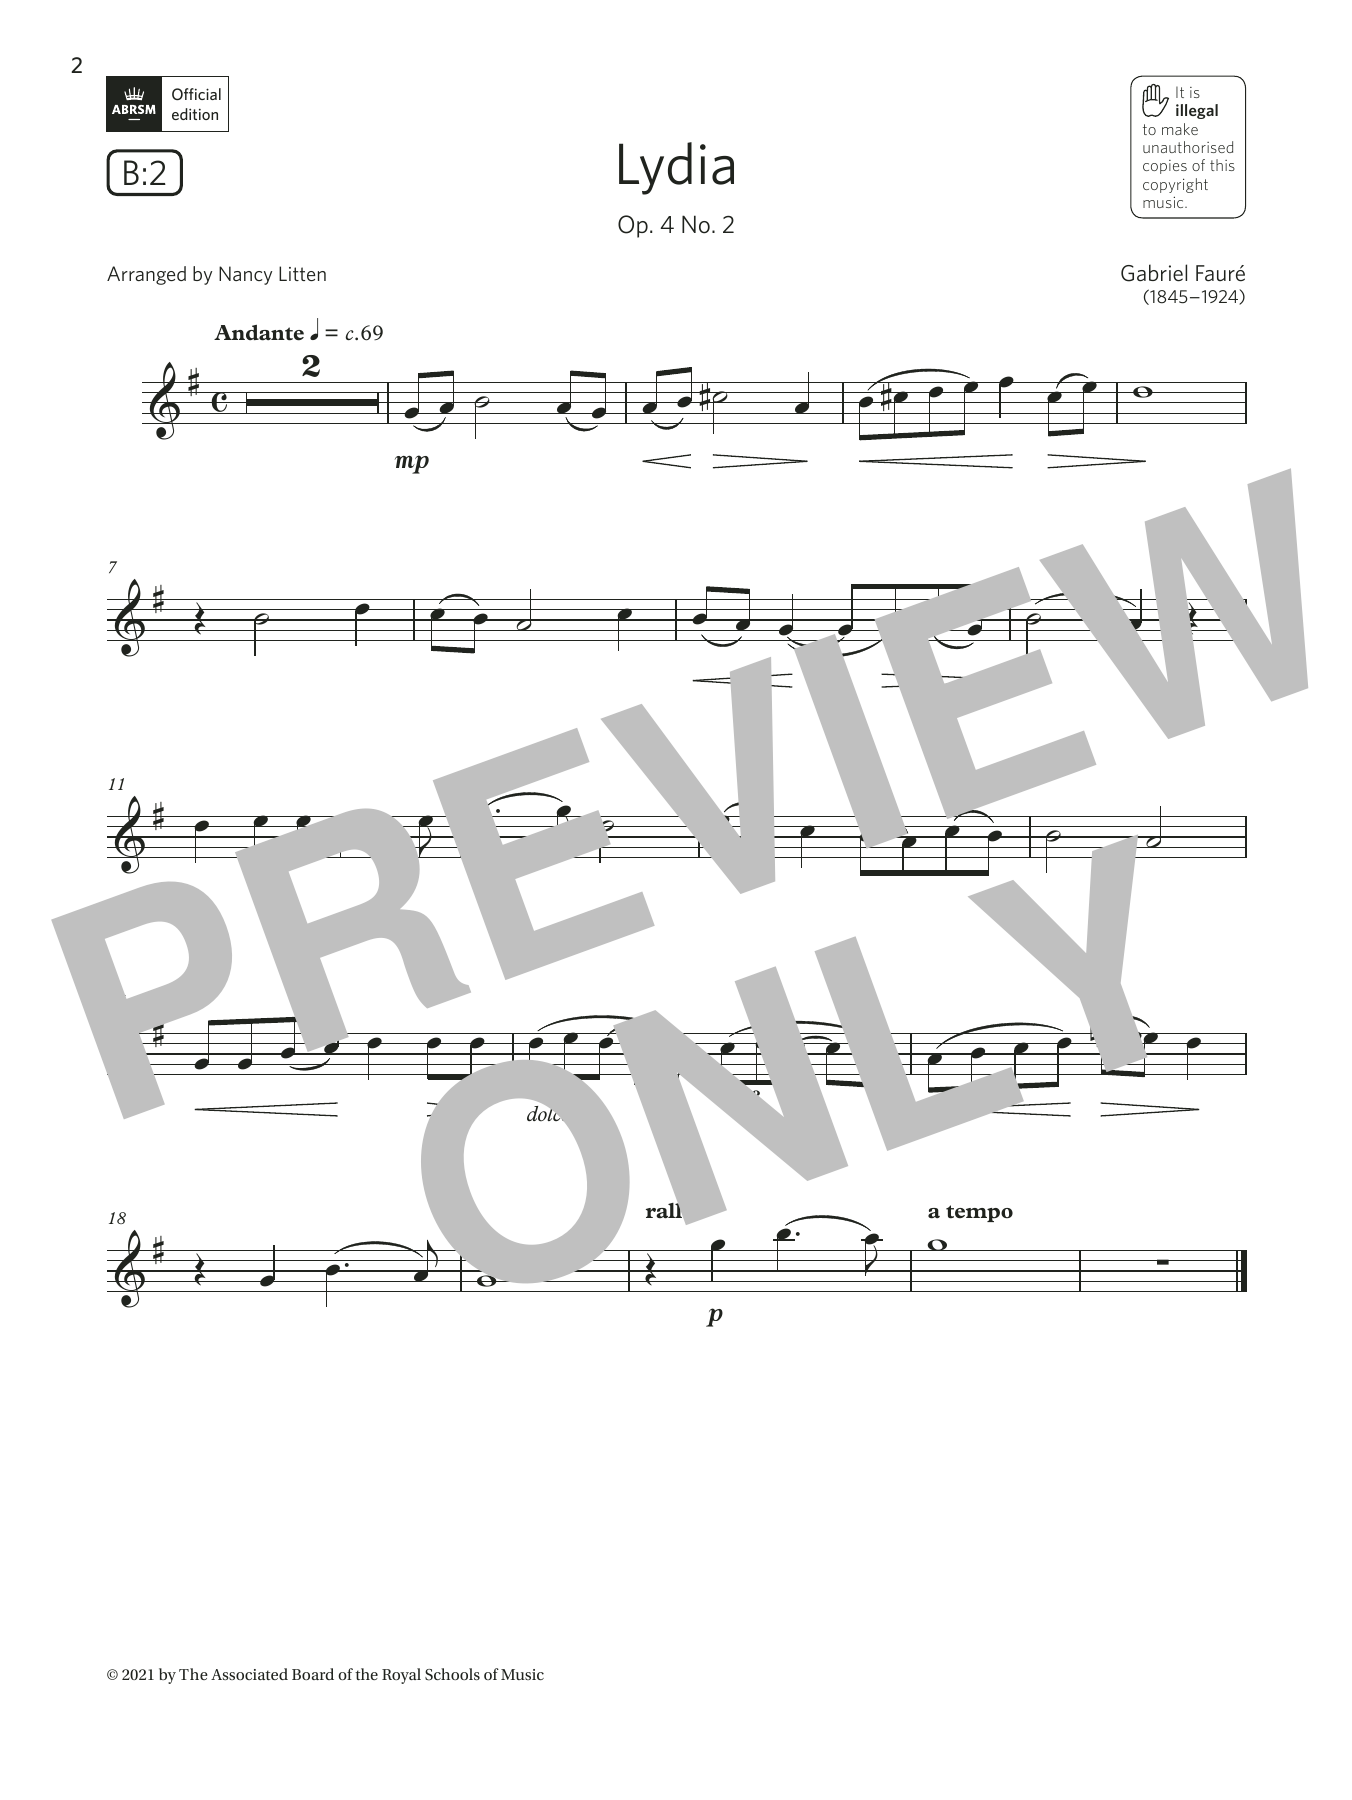 Download Gabriel Faure Lydia, Op. 4 No. 2 (Grade 3 List B2 fr Sheet Music